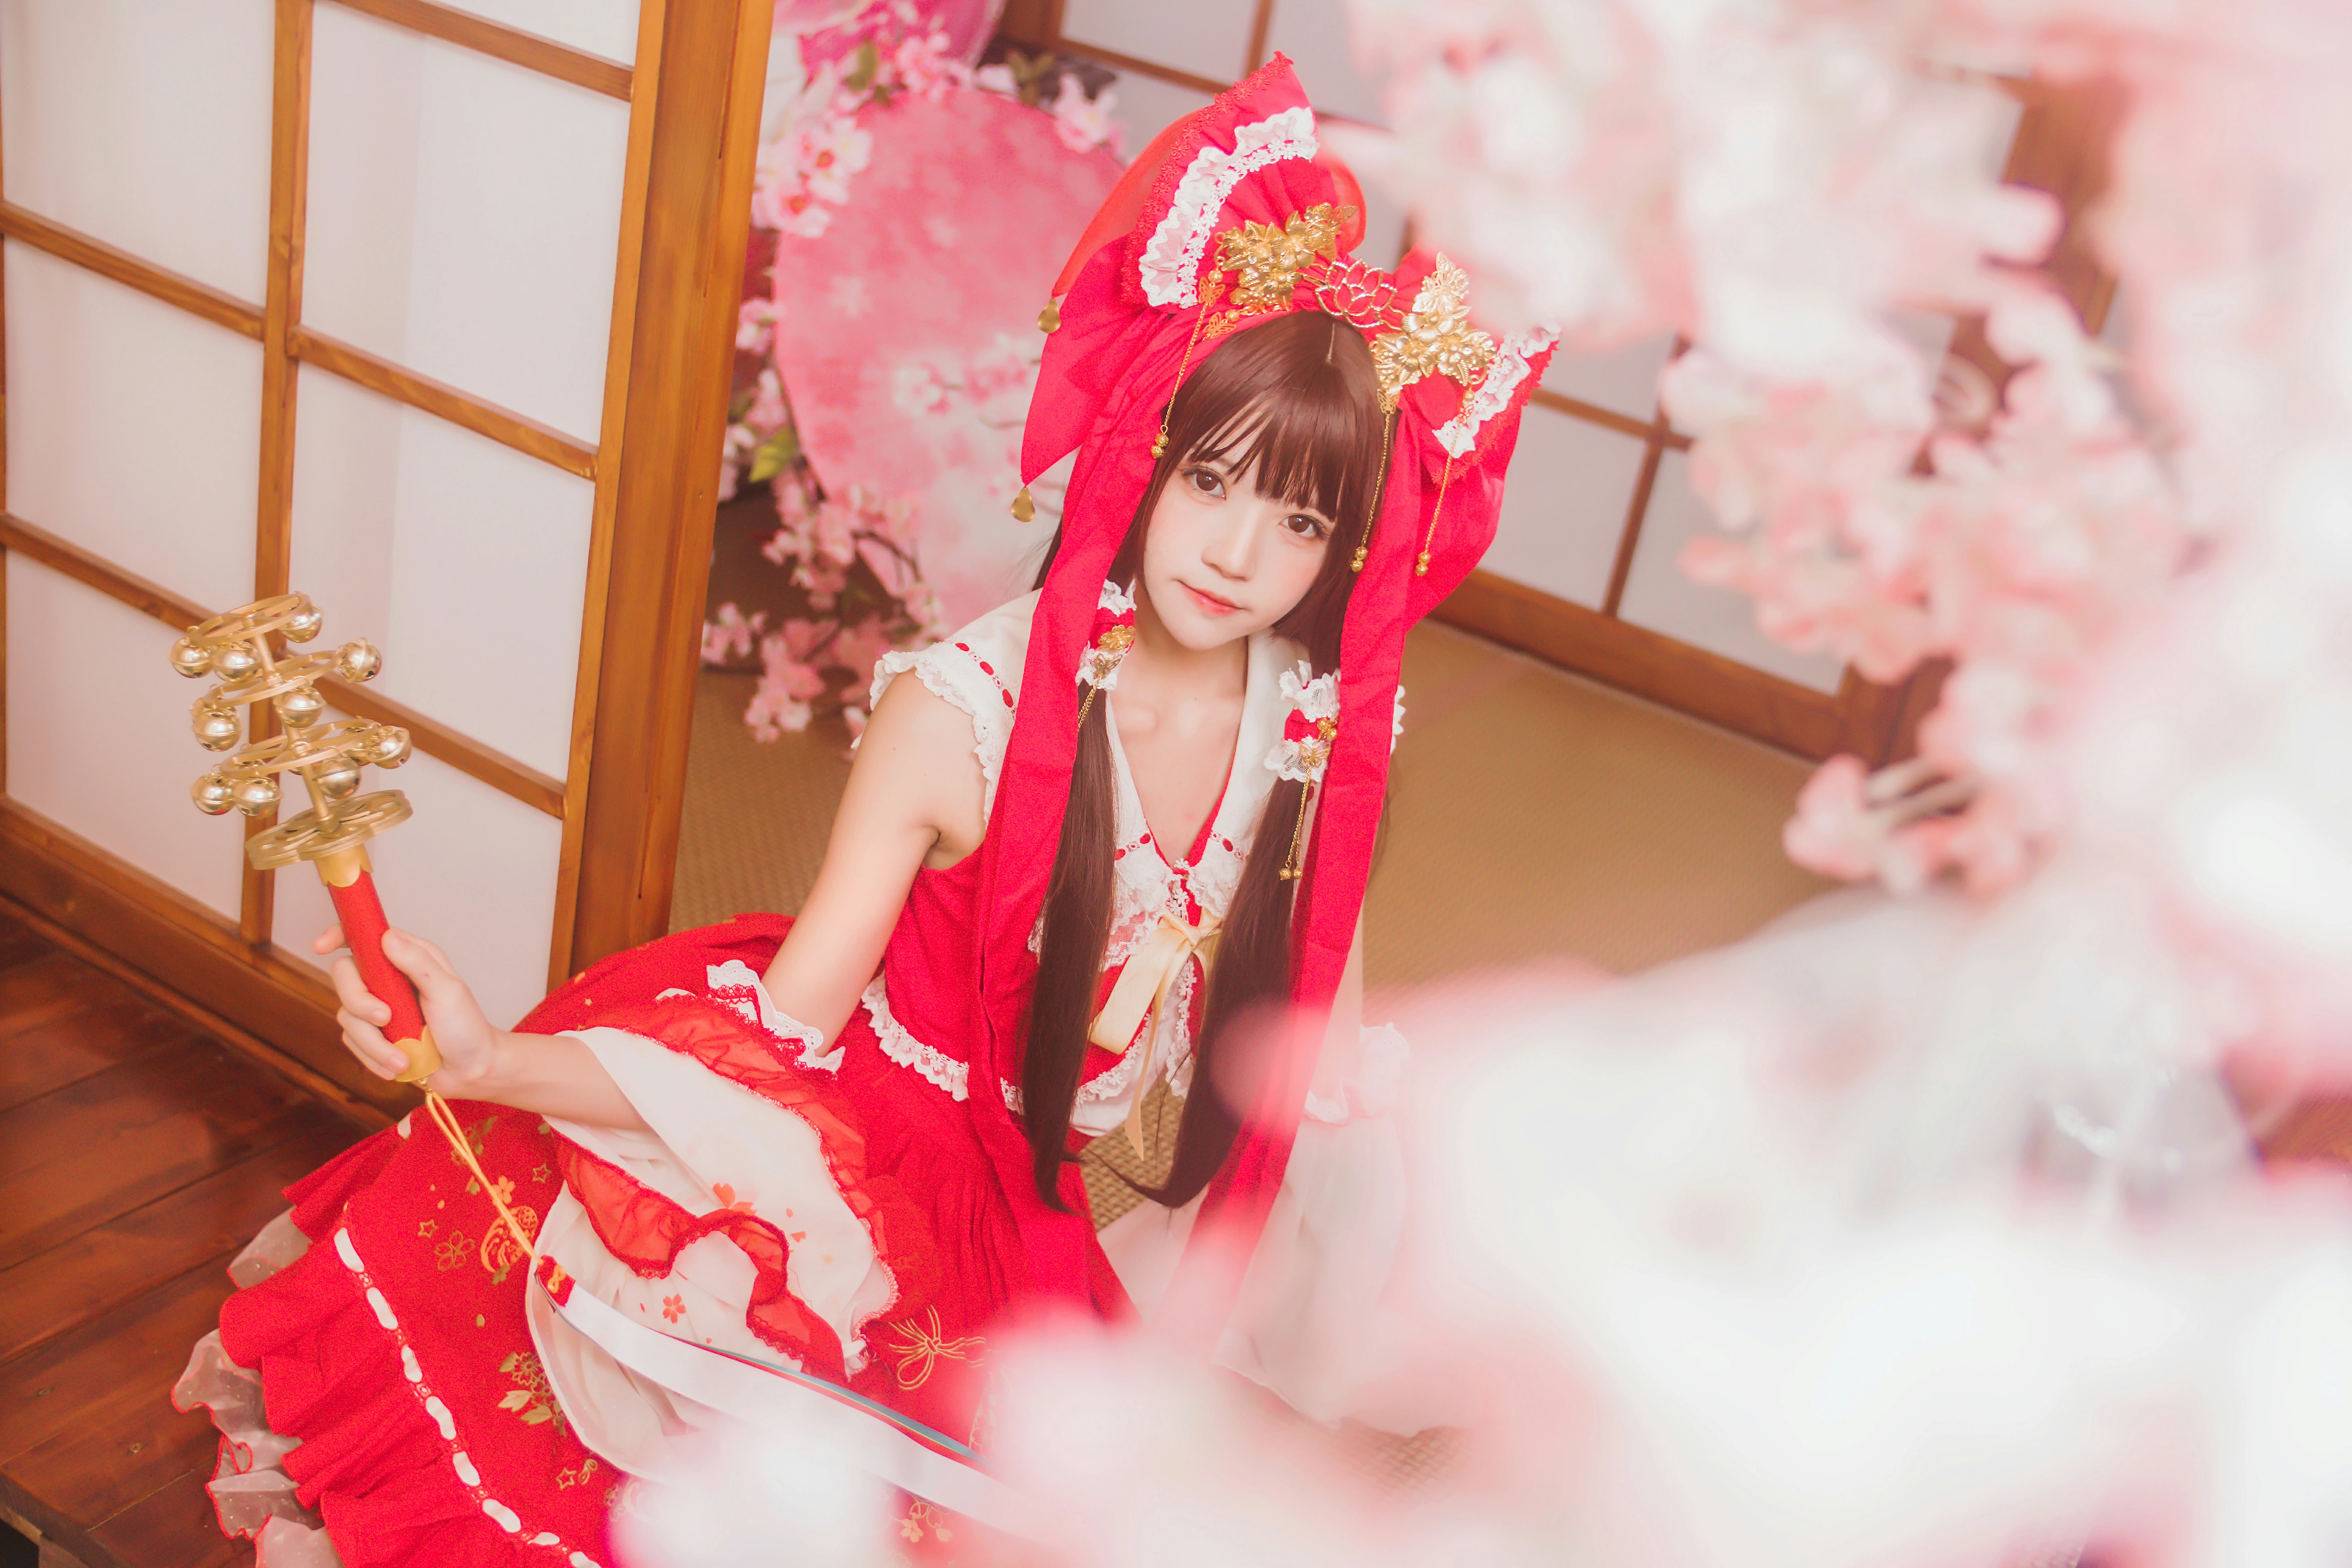 清纯少女小萝莉 桜桃喵 红色连身制服裙 和风写真,0022